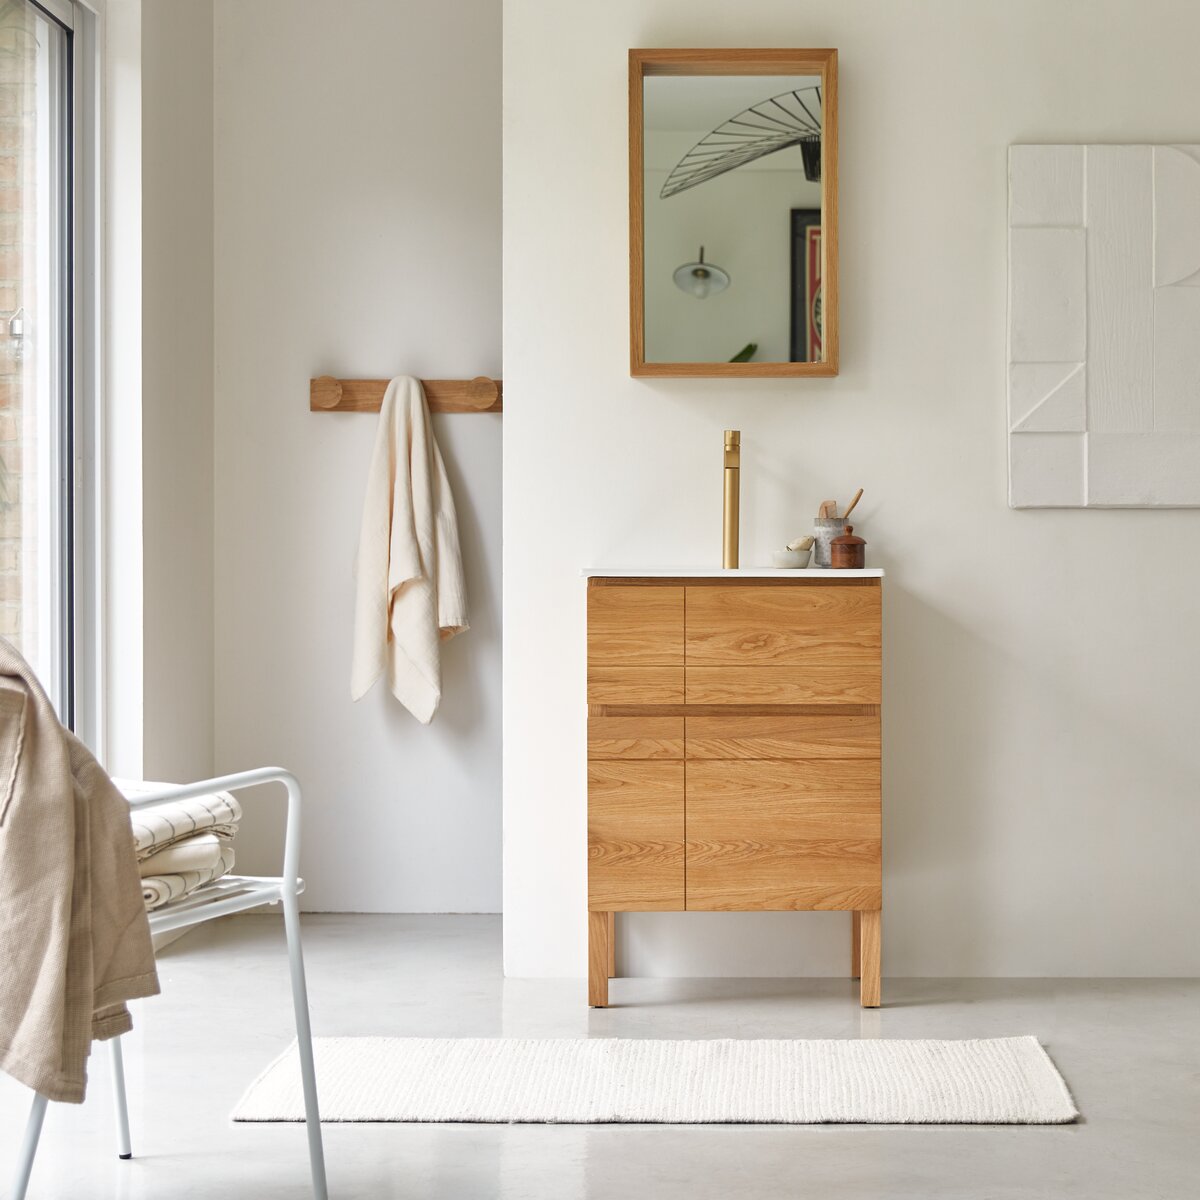 9 exemples de meubles fonctionnels pour salle de bain